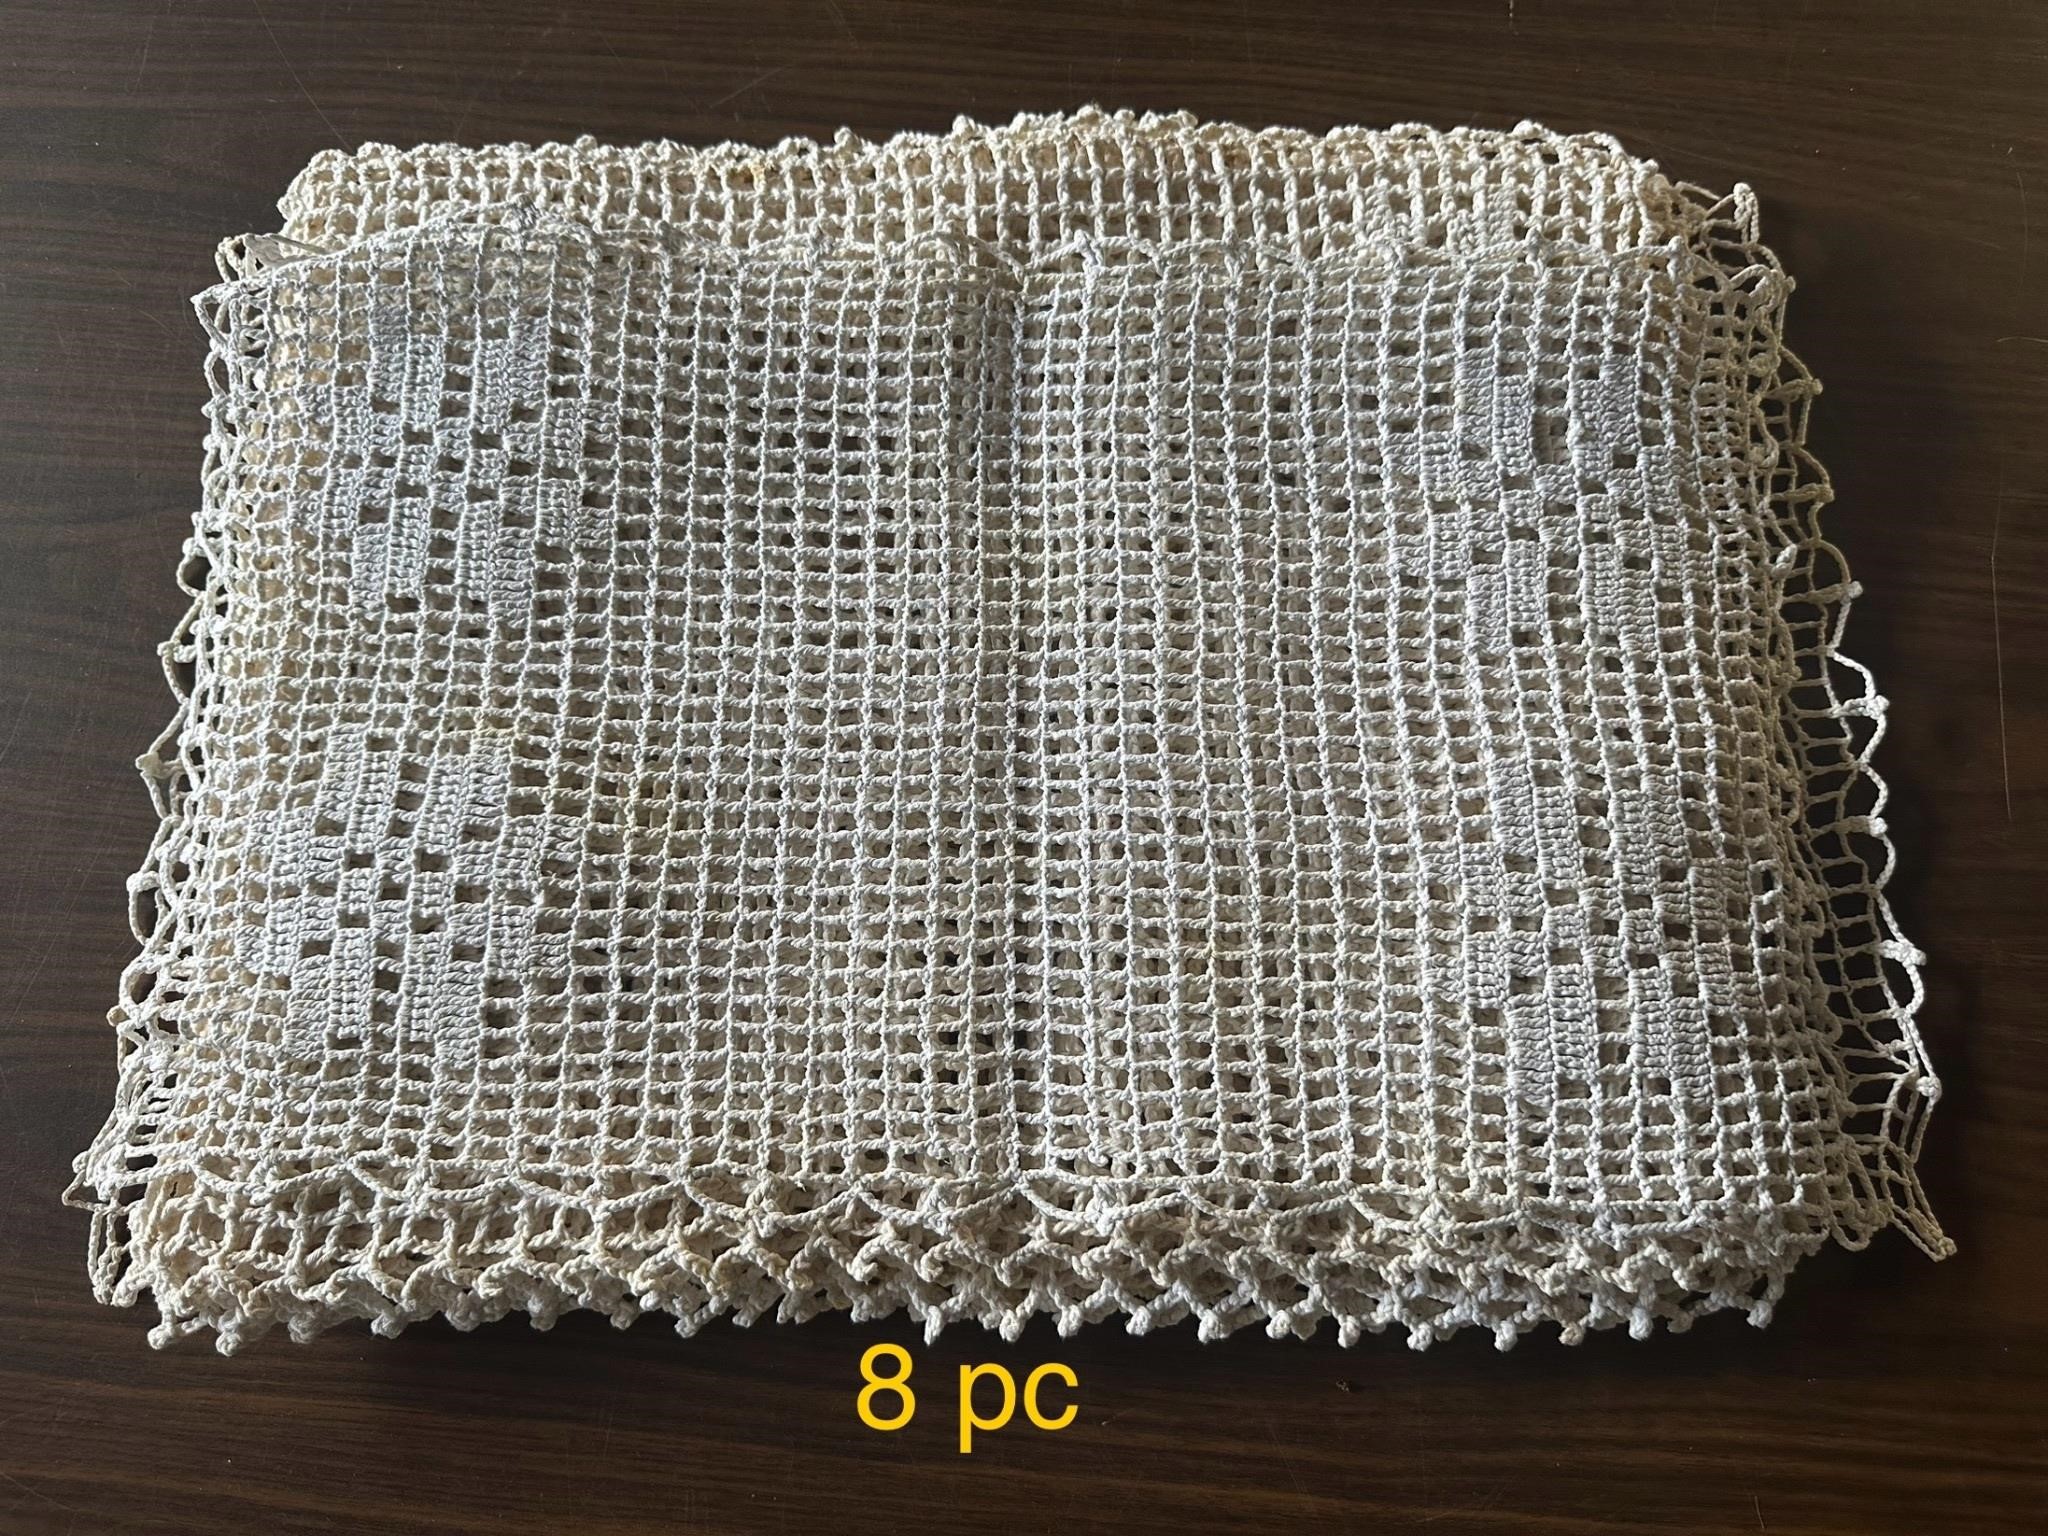 8 pc Vintage Crochet Placemats